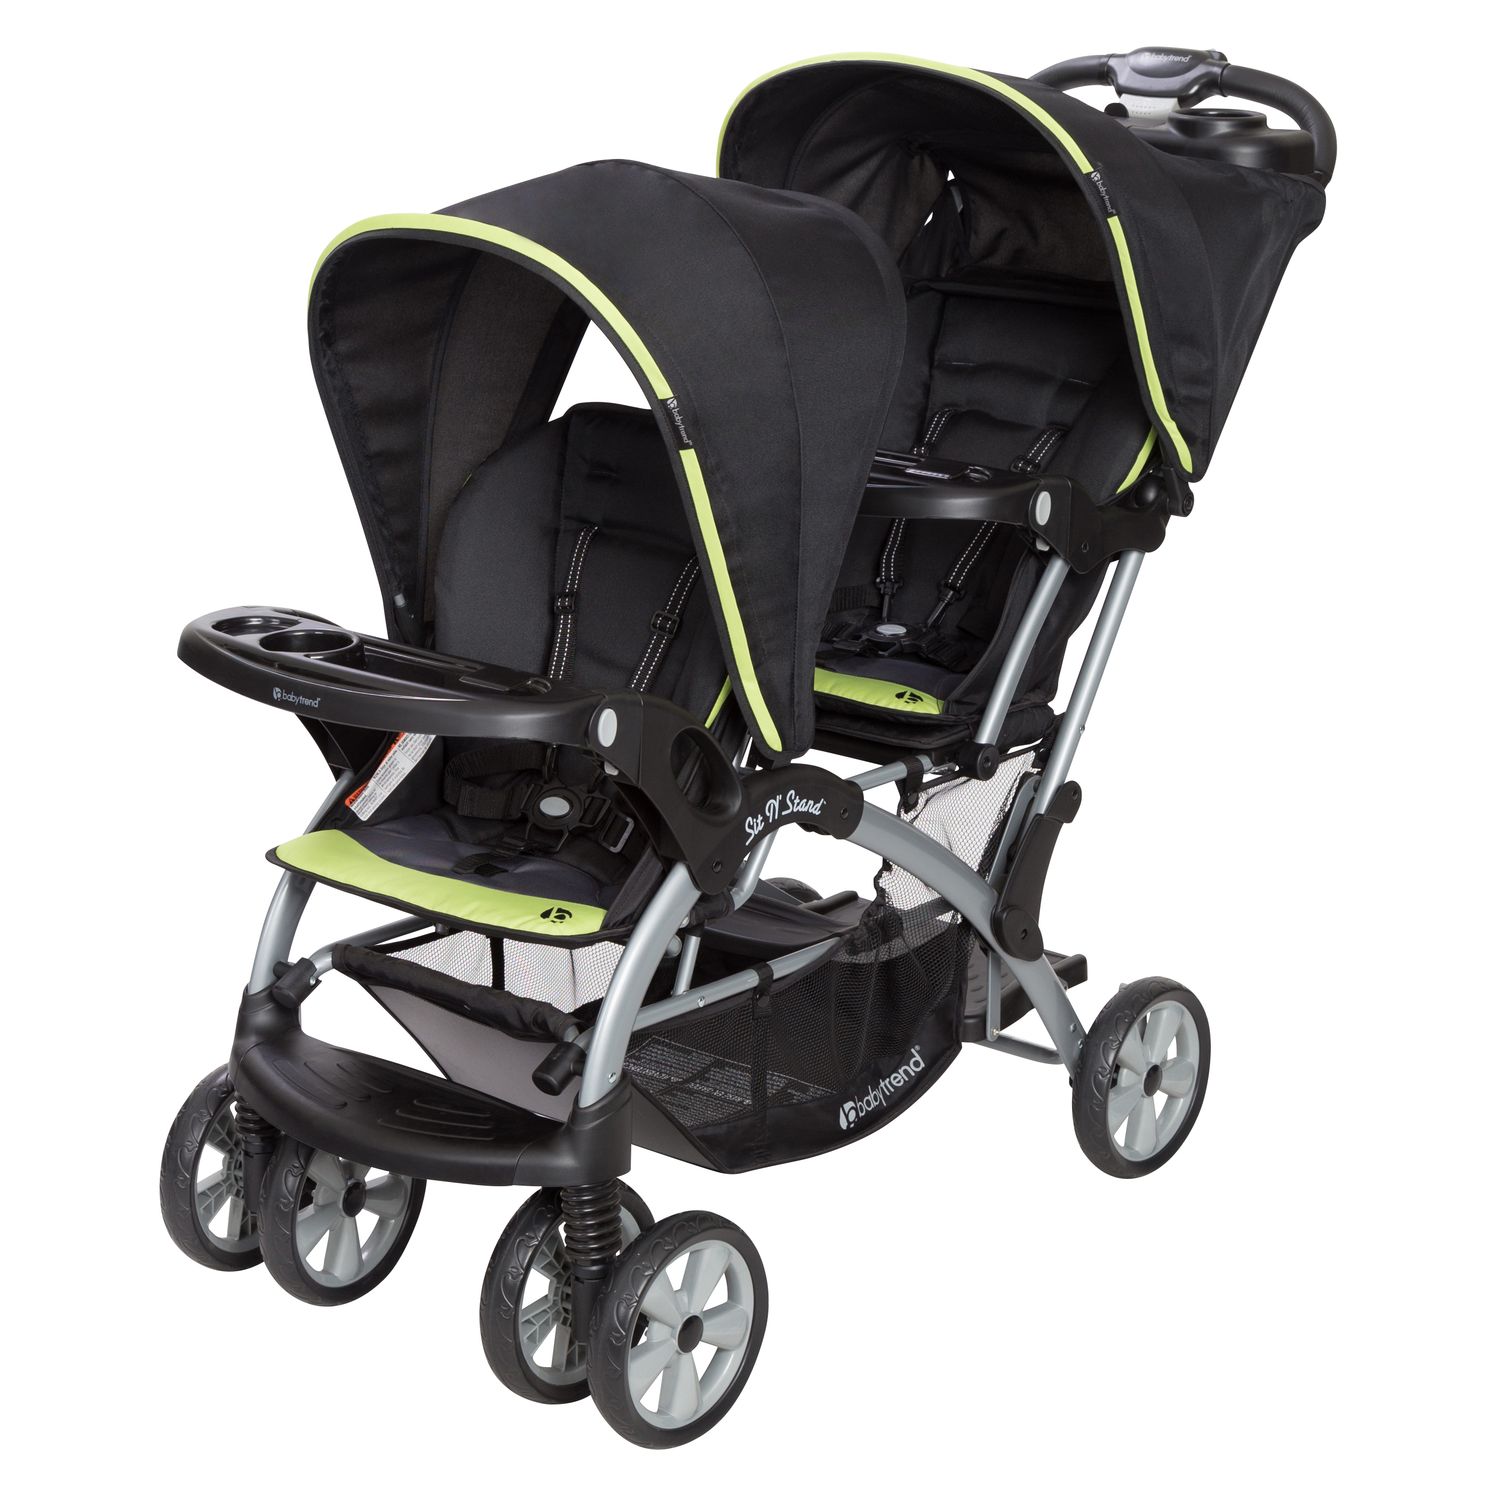 baby grace ultra lightweight stroller